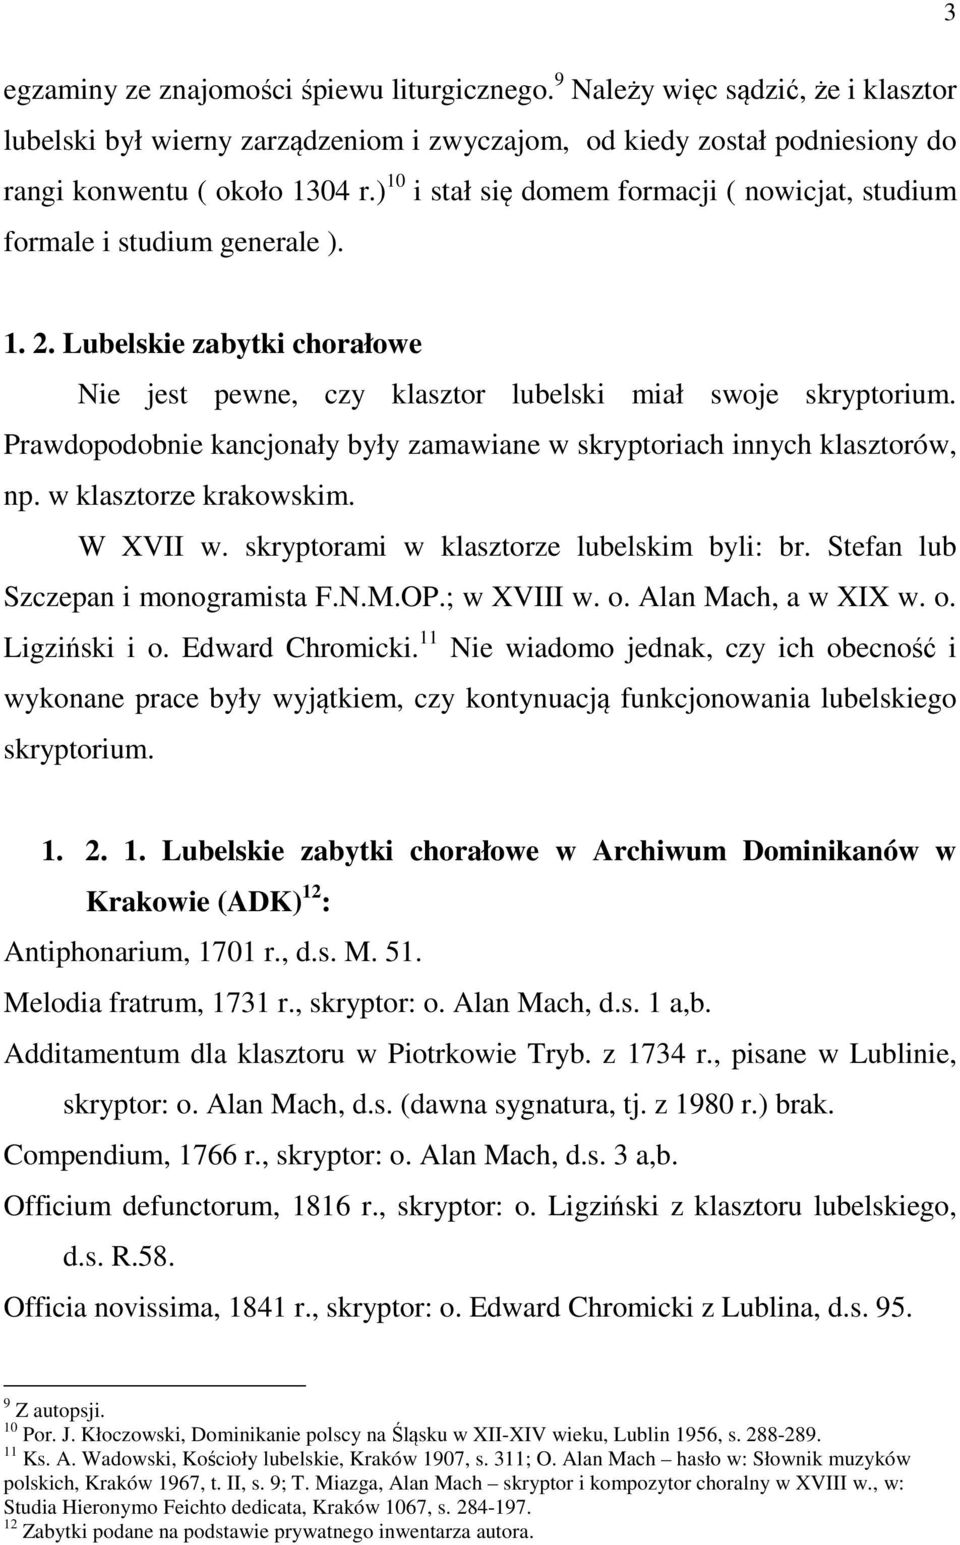 Prawdopodobnie kancjonały były zamawiane w skryptoriach innych klasztorów, np. w klasztorze krakowskim. W XVII w. skryptorami w klasztorze lubelskim byli: br. Stefan lub Szczepan i monogramista F.N.M.